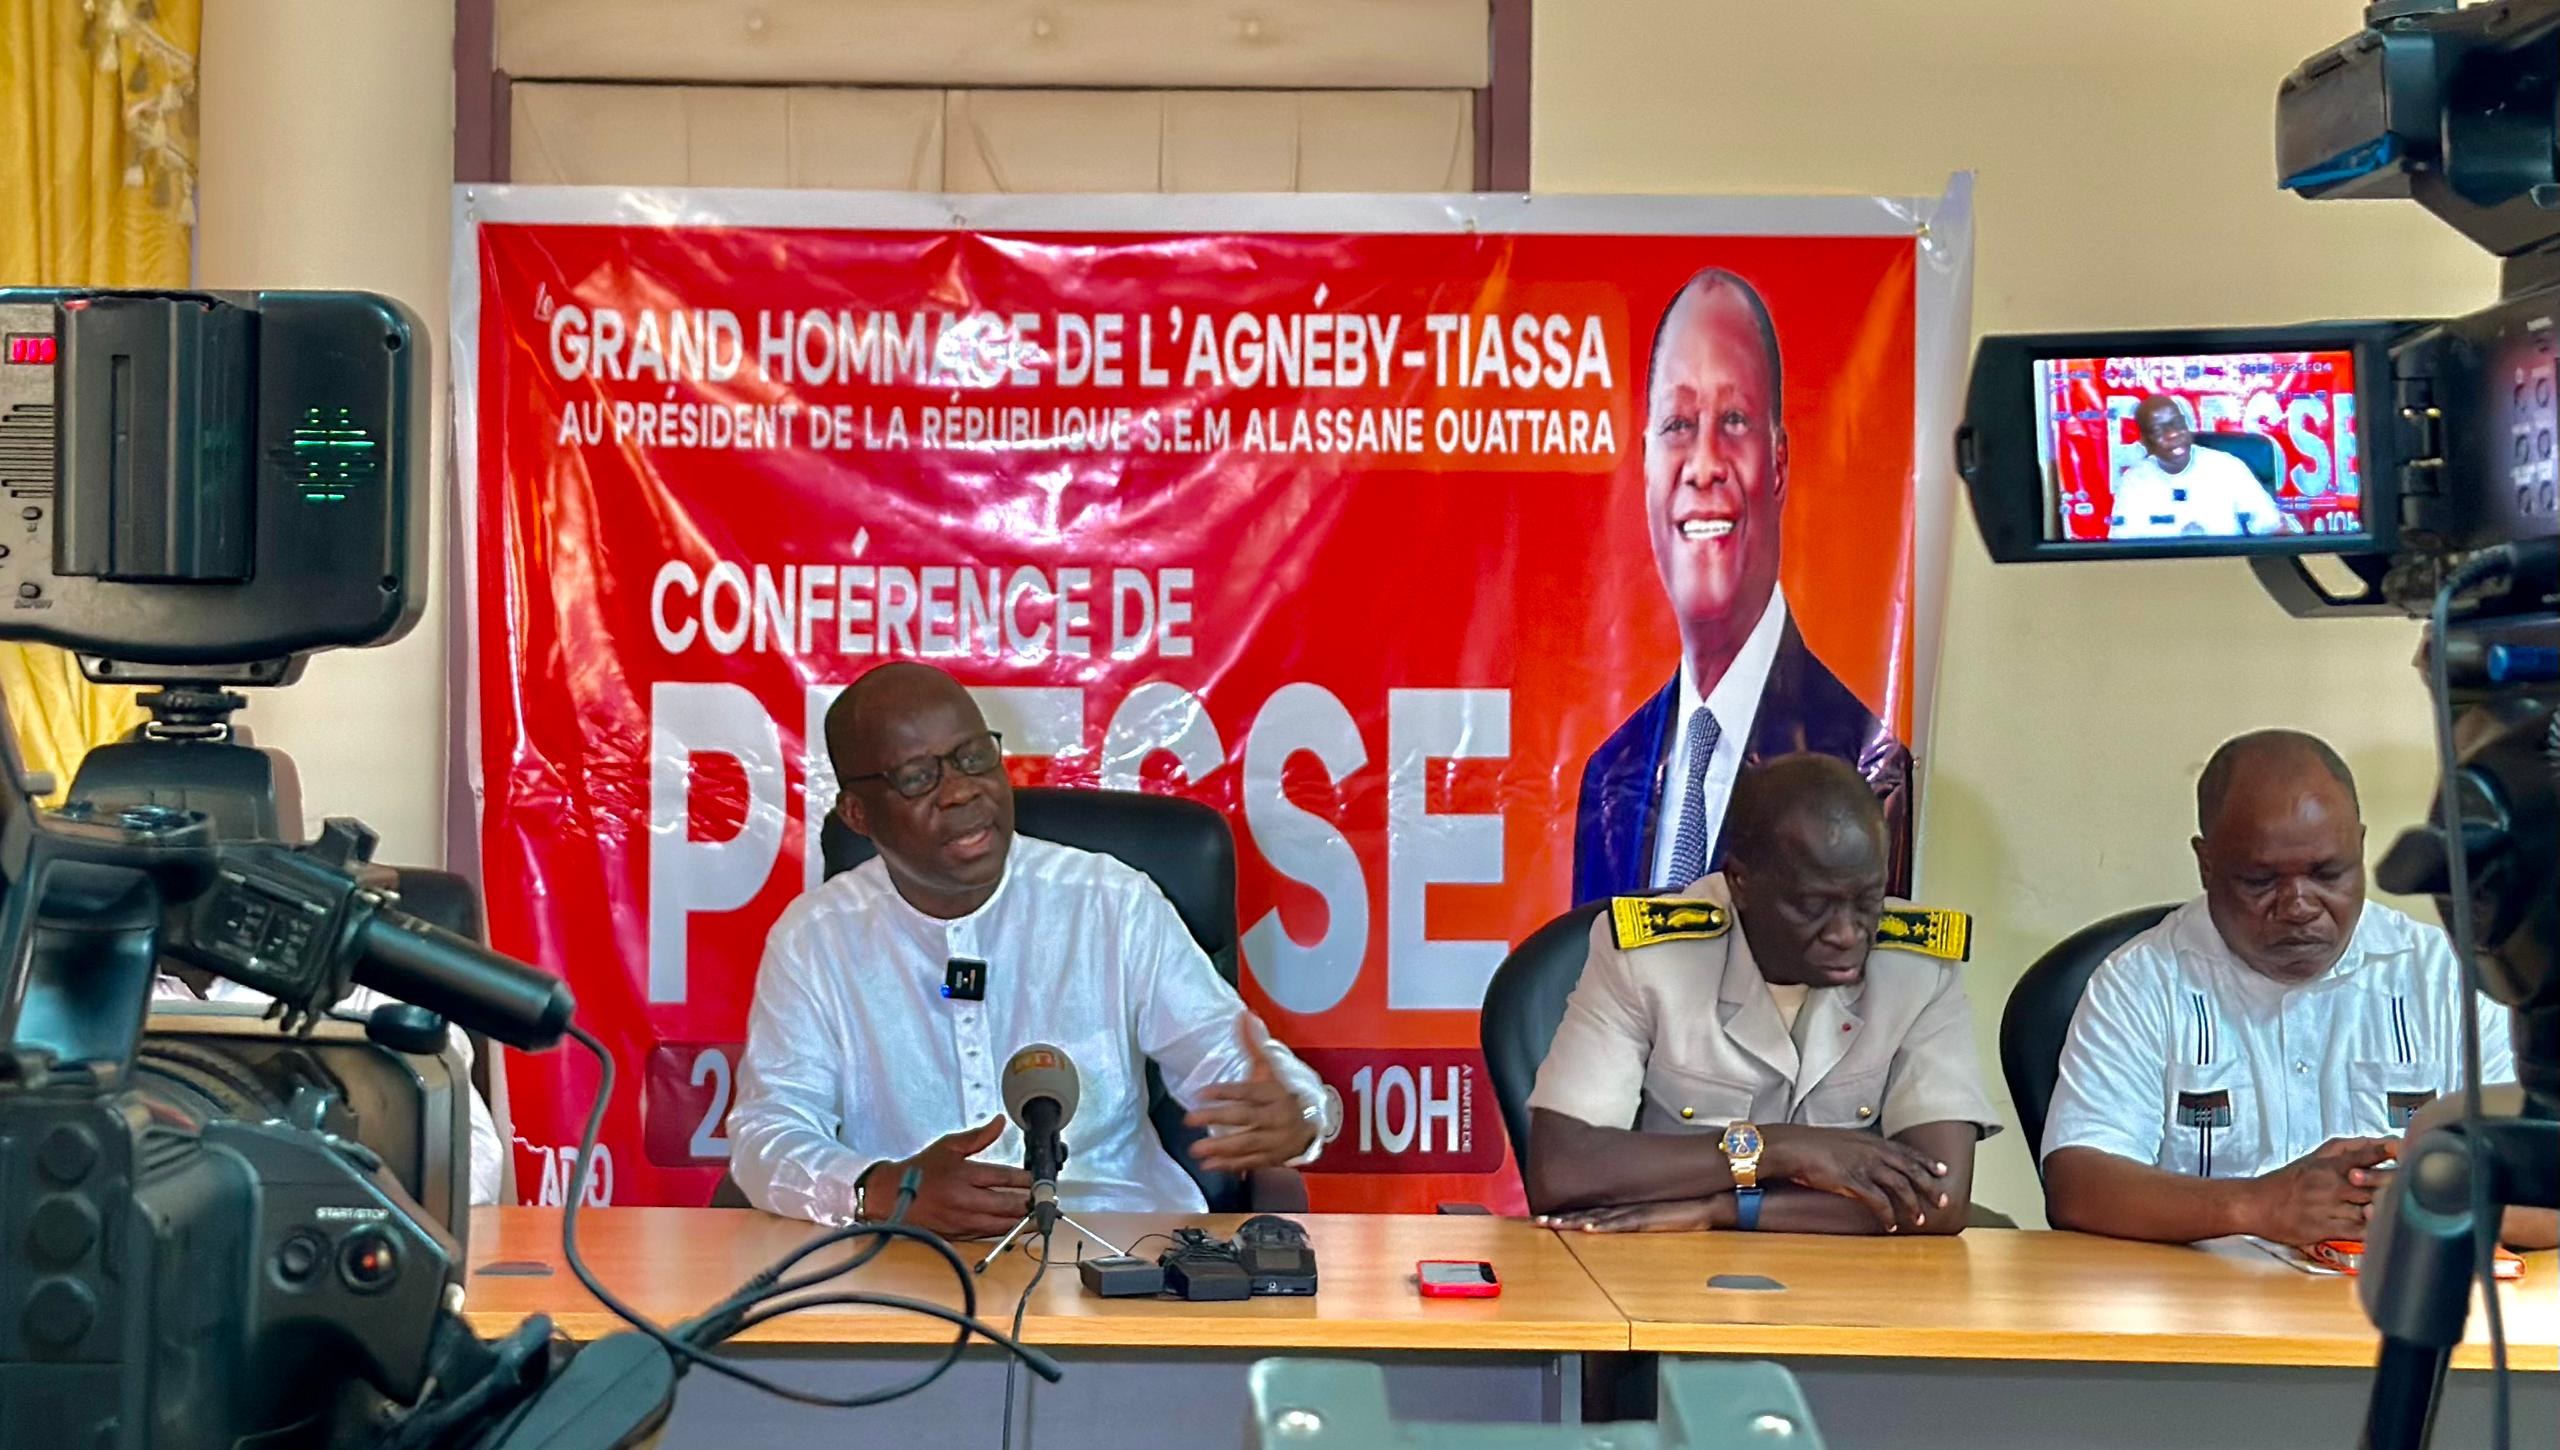 Hommage de l’Agnéby-Tiassa au président Alassane Ouattara le samedi 04 mai à Agboville: Le ministre Dimba Pierre boucle tout